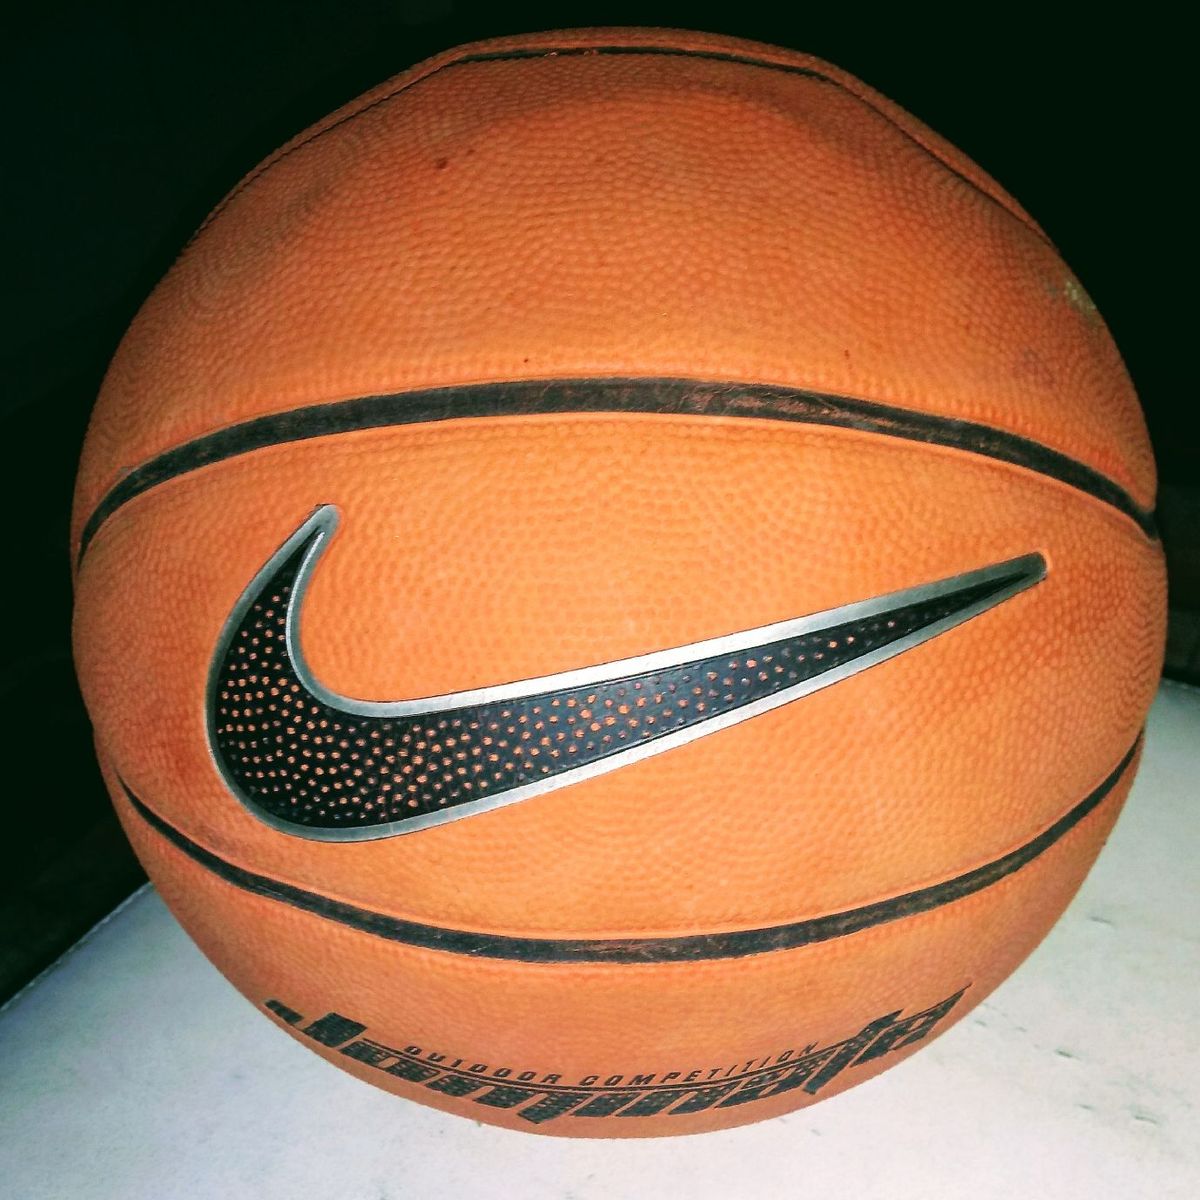 Bola de Basquete Nike Baller Usada Poucas Vezes, Roupa Esportiva Masculino  Nike Usado 39897490